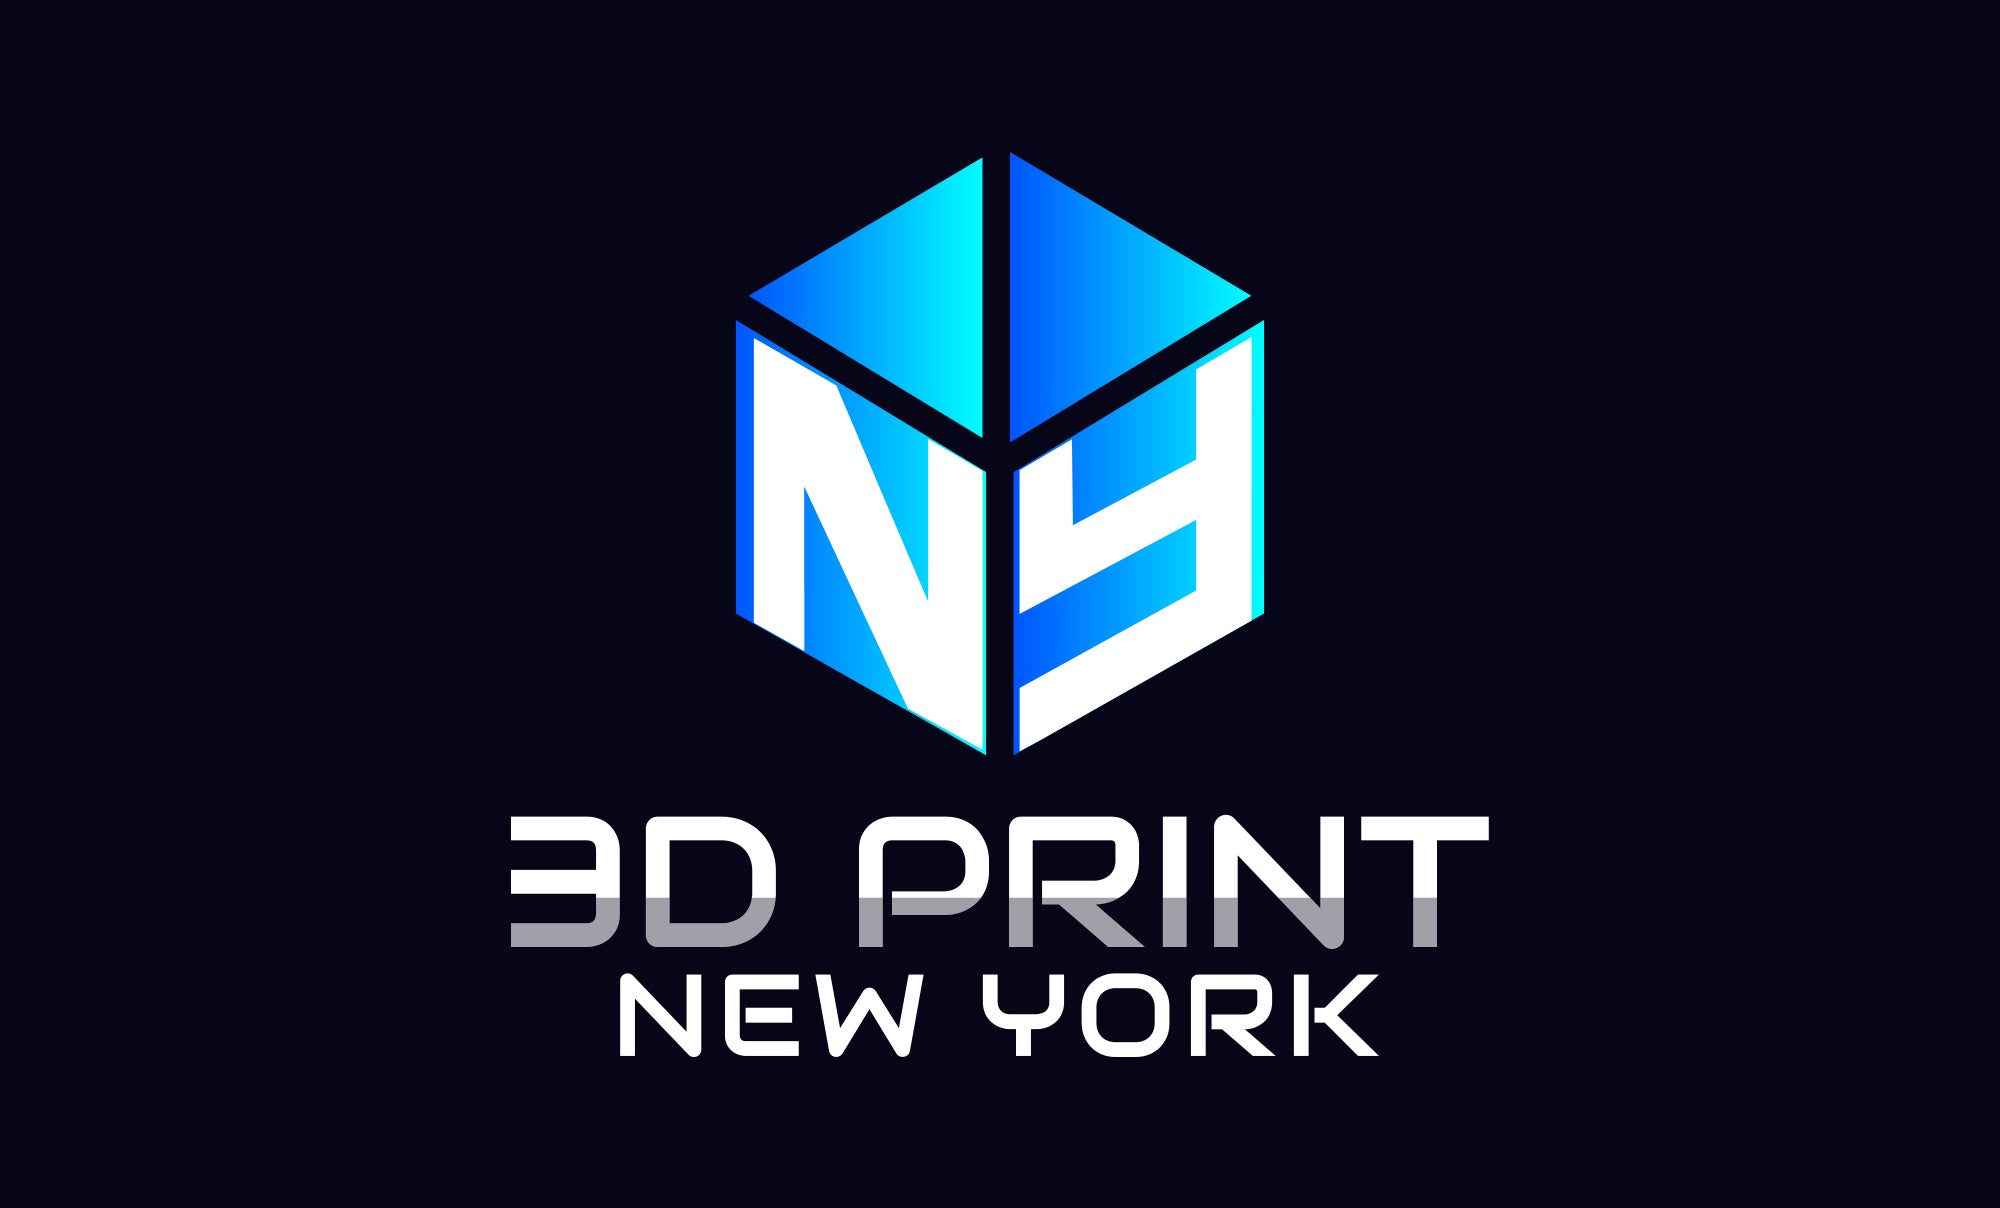 3D Print New York